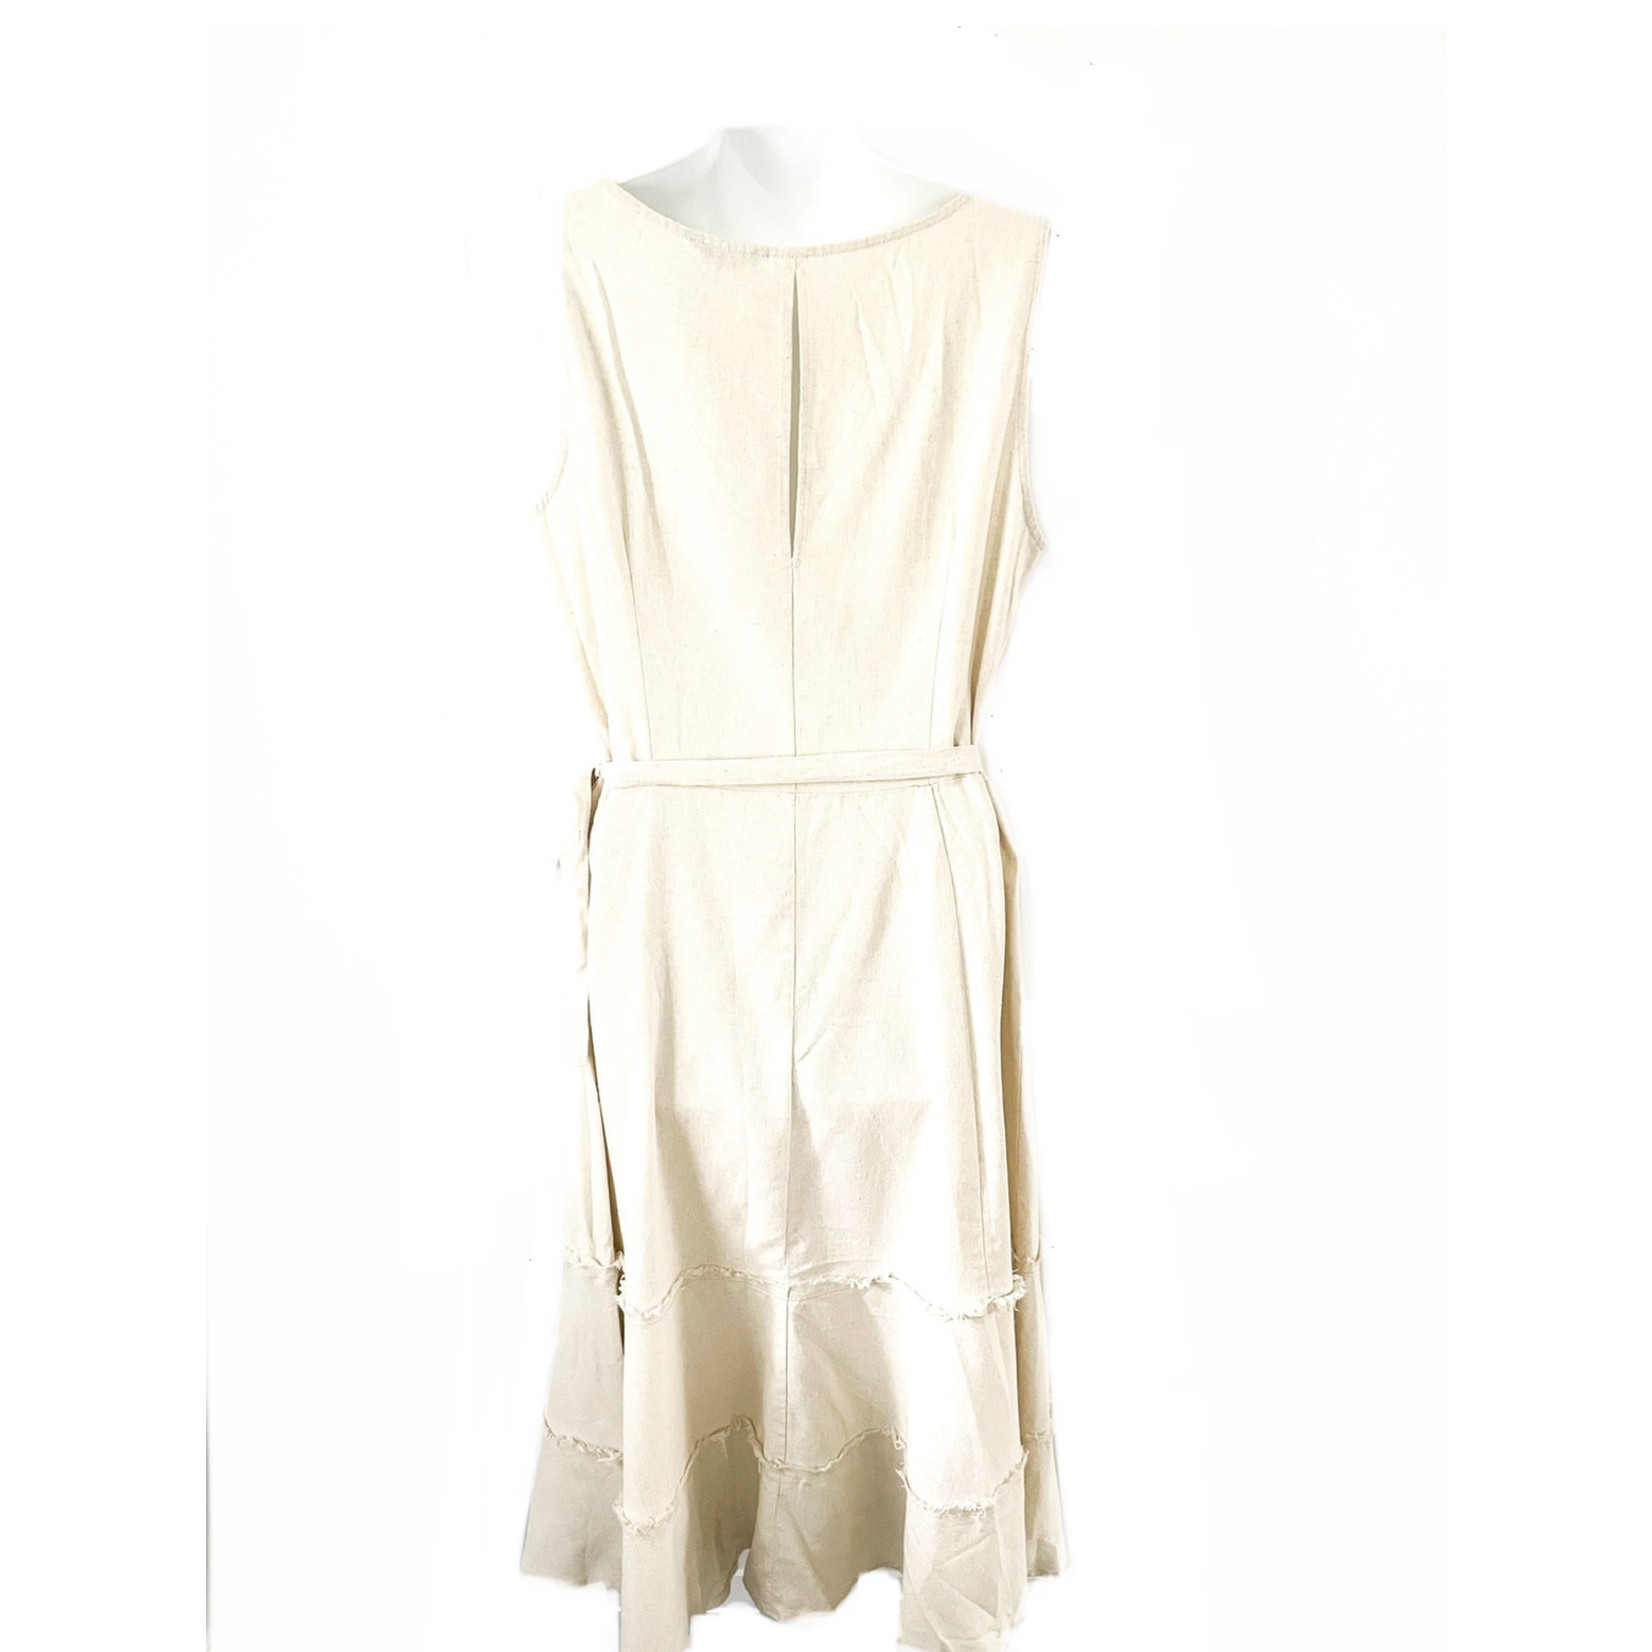 Jolie Jolie Natural Linen Wrap Dress - Size L